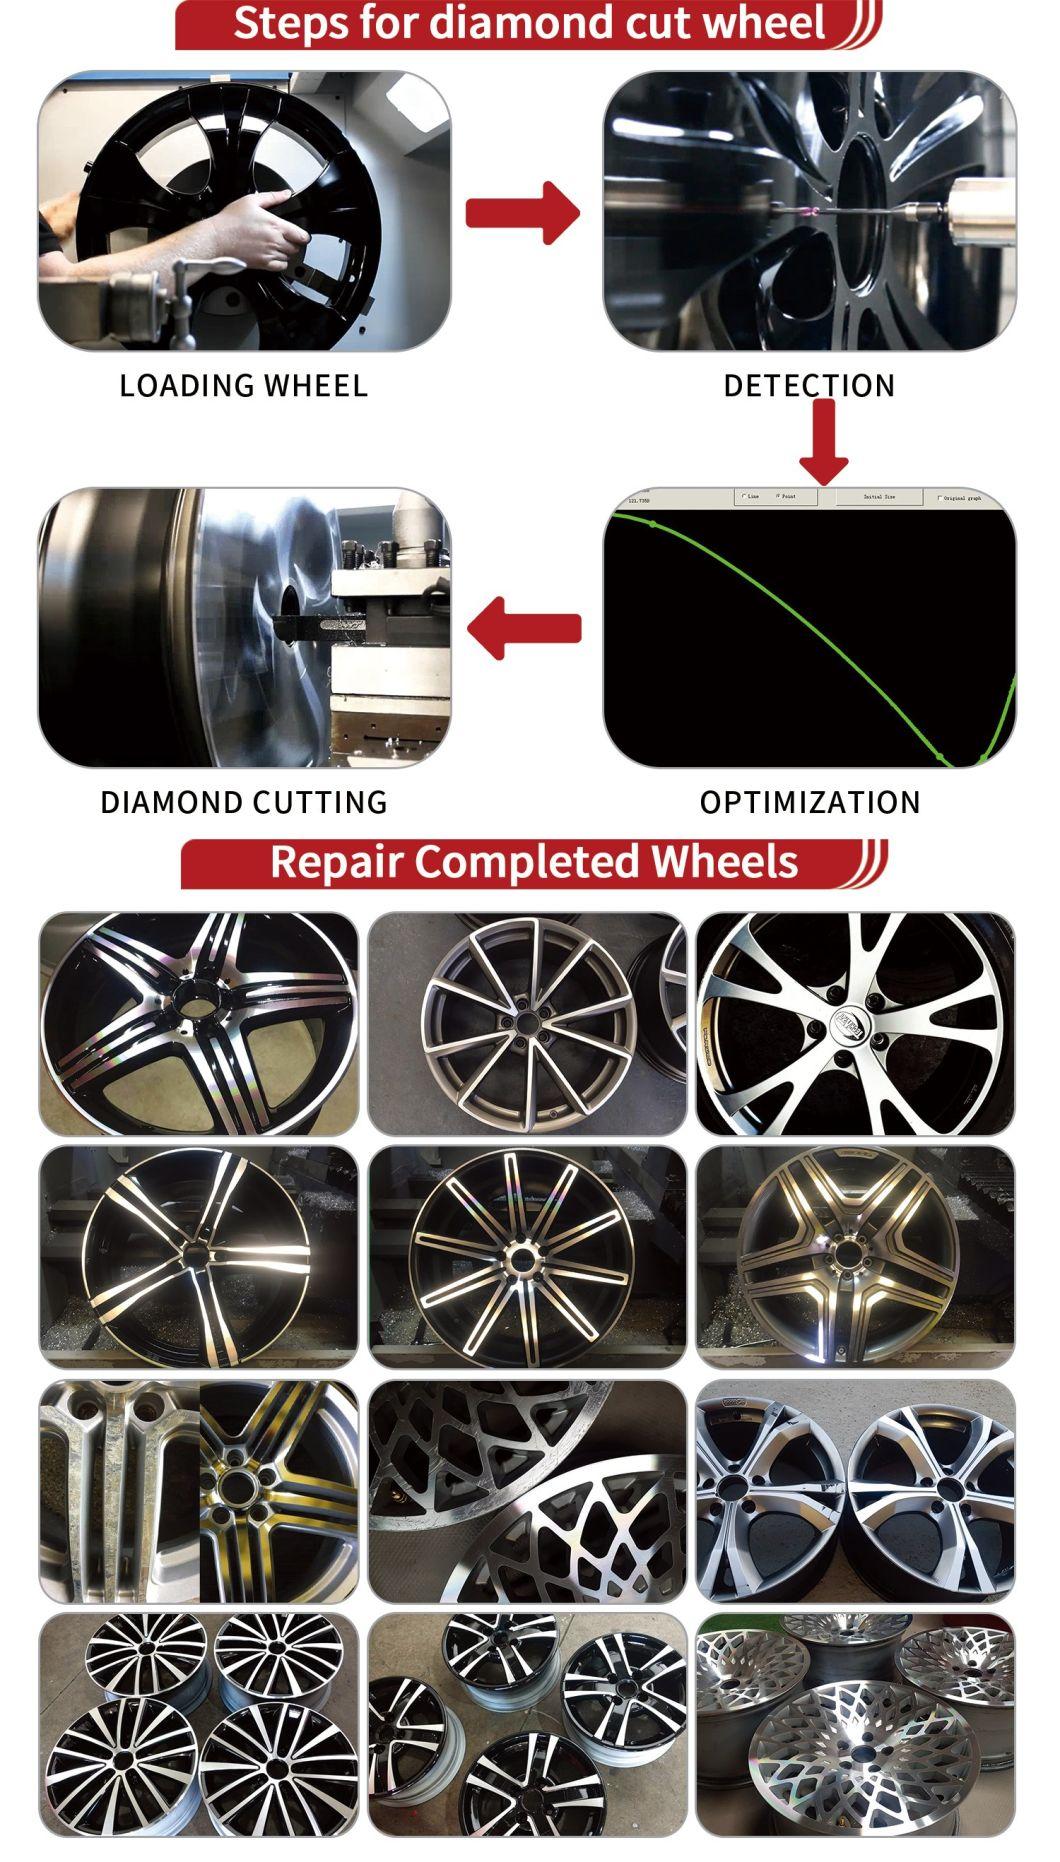 Car Wheel CNC Equipment for Cutting Rim Repair CNC Lathe